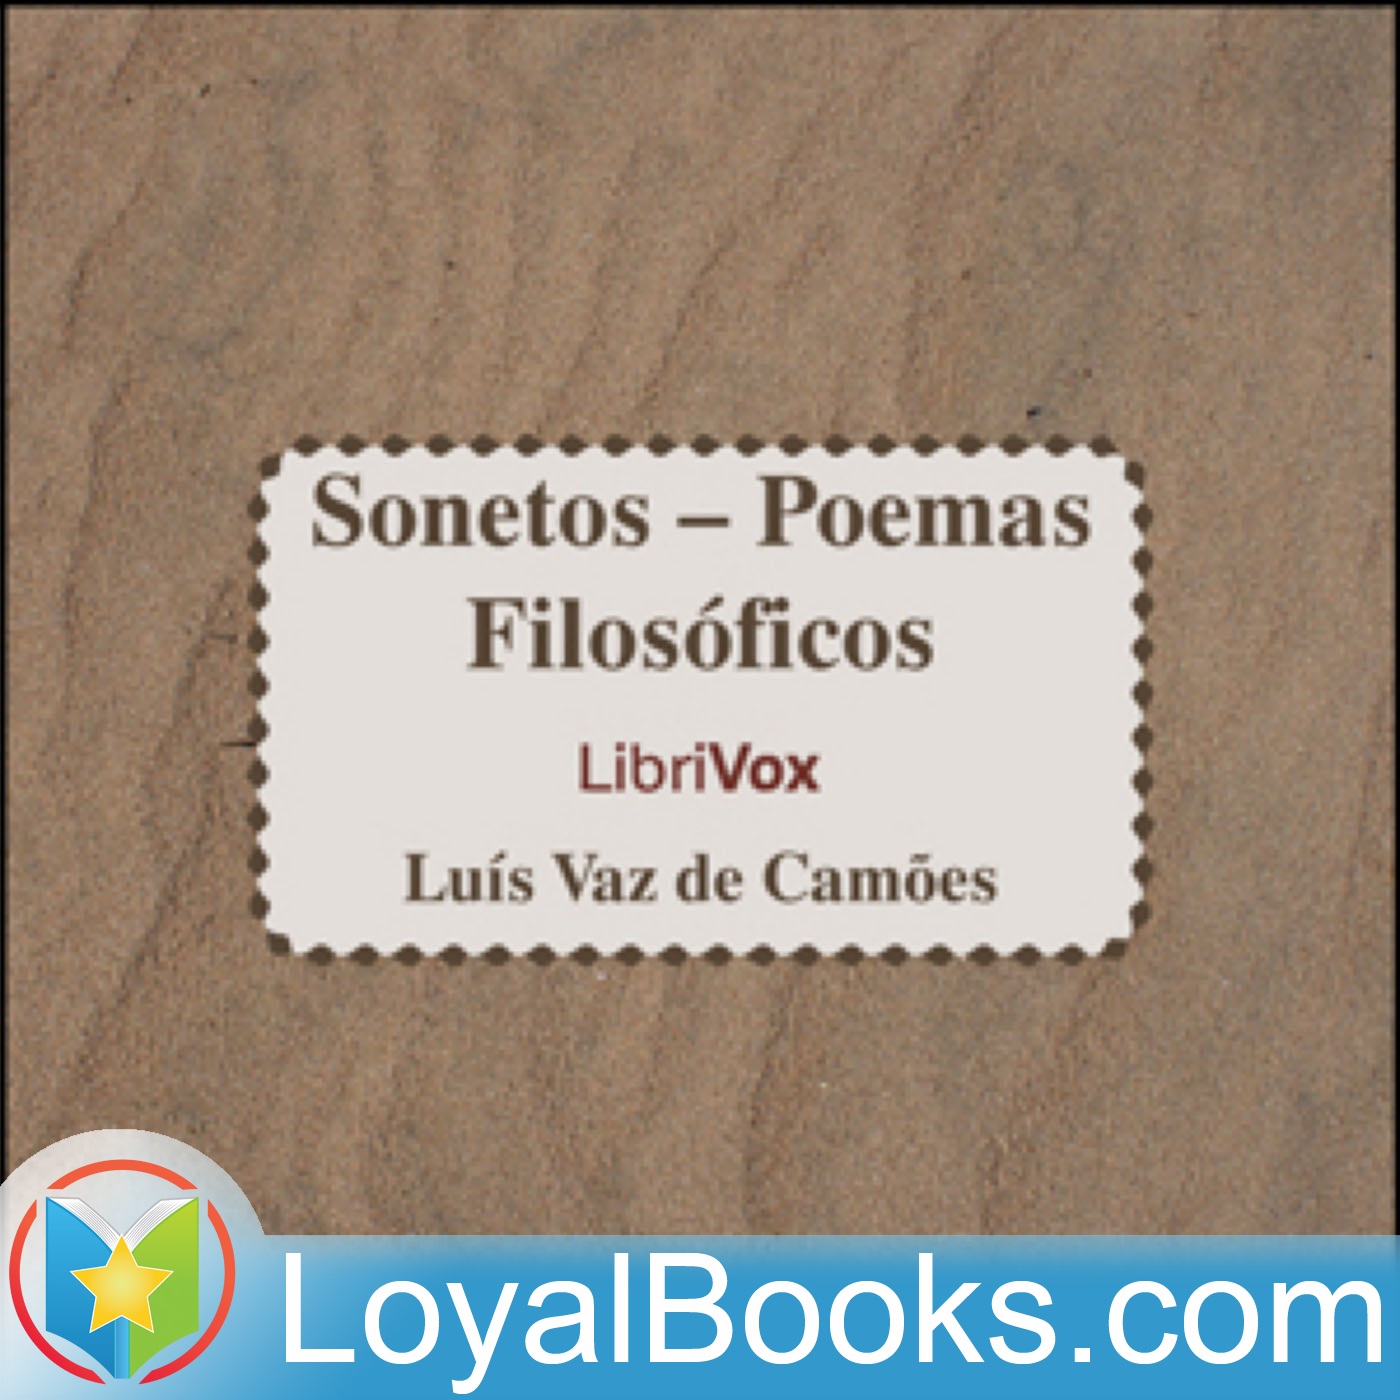 Sonetos – Poemas Filosóficos by Luis Vaz de Camões